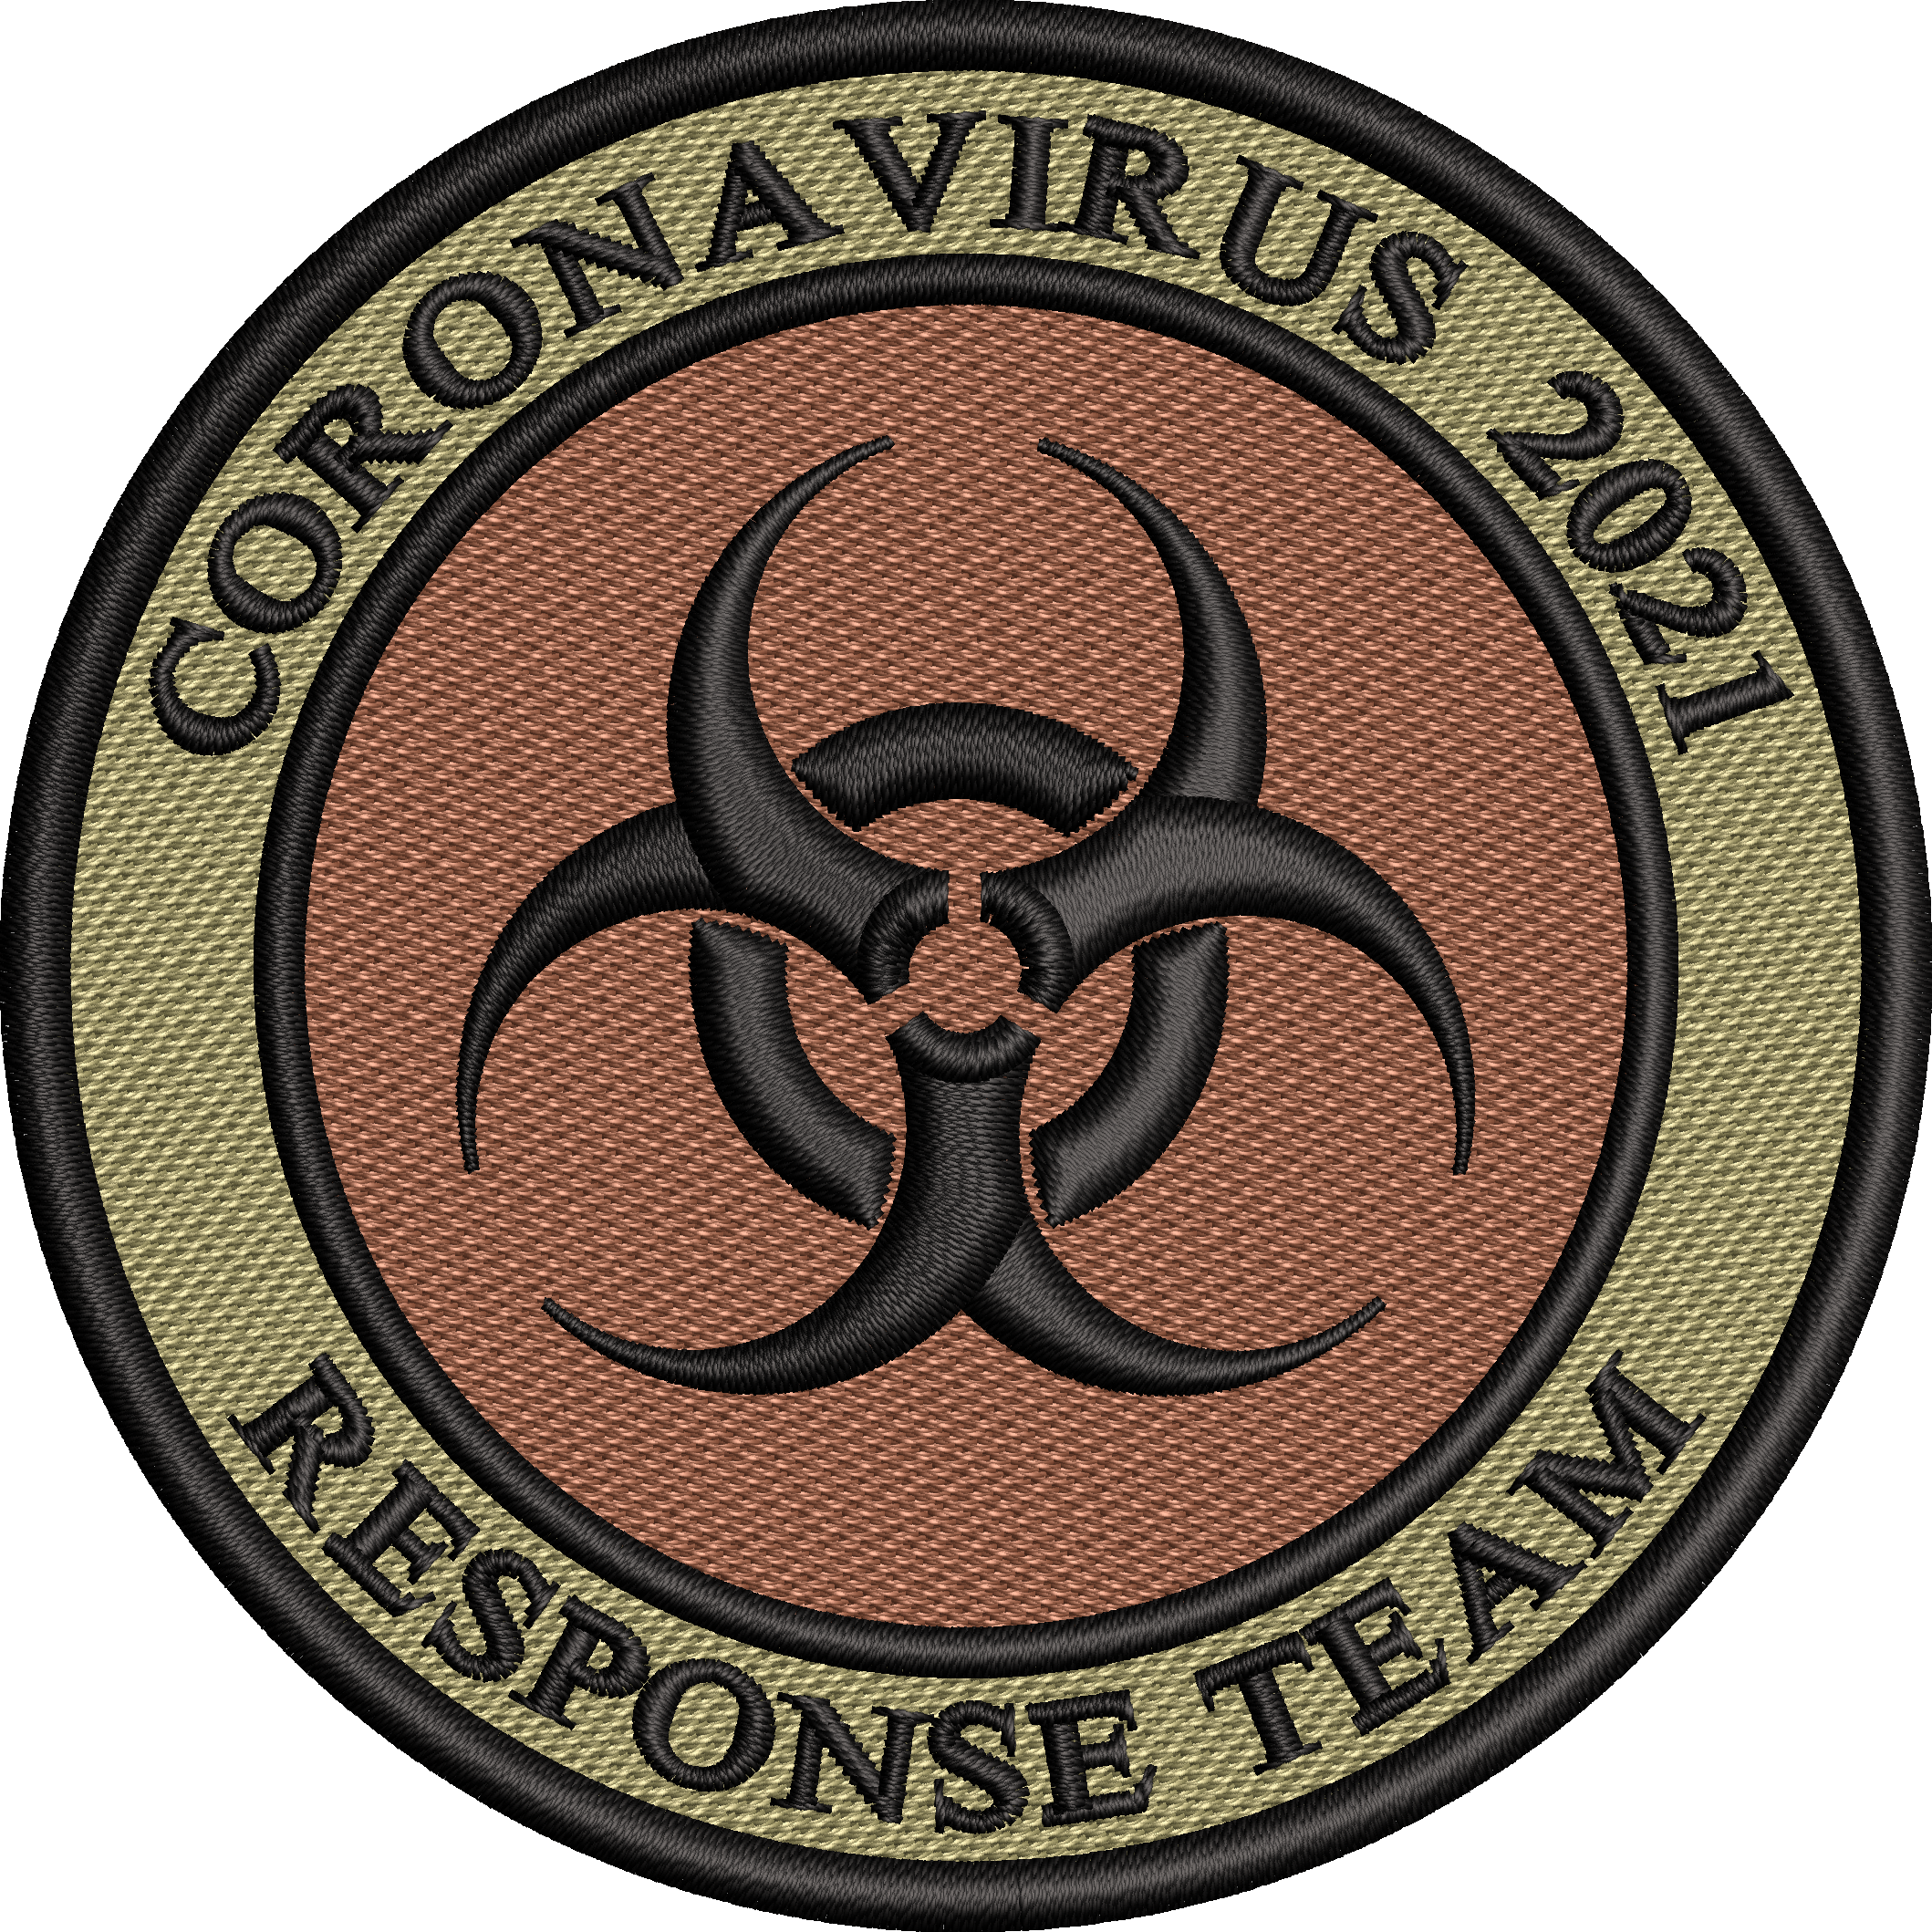 Response Team - Coronavirus 2021